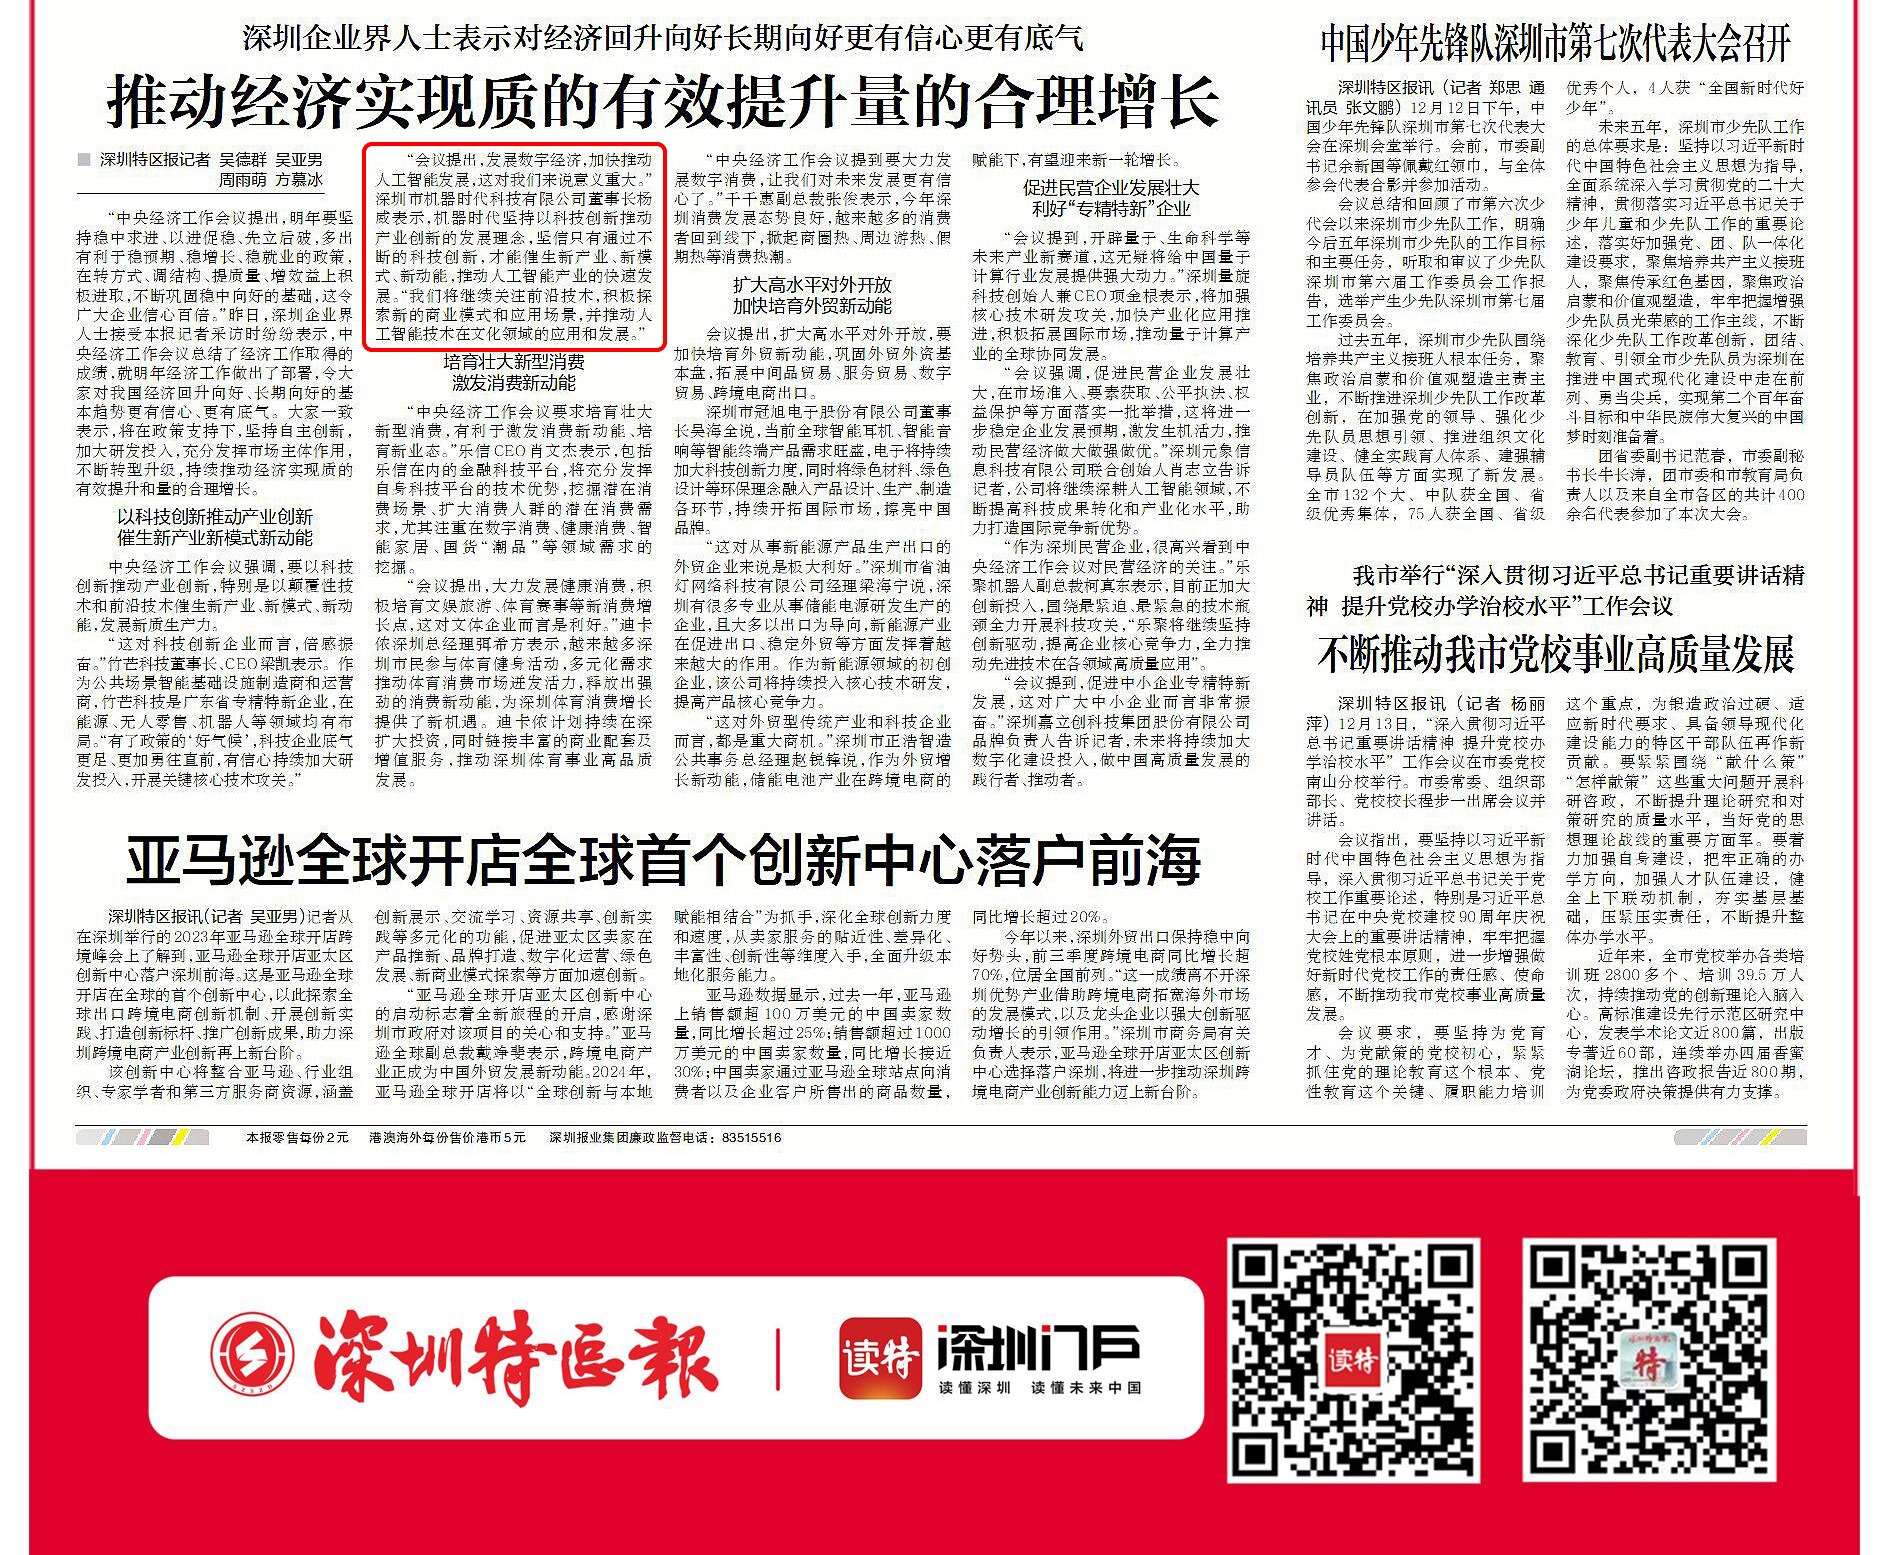 机器时代董事长杨威作为深圳企业代表接受深圳特区报采访